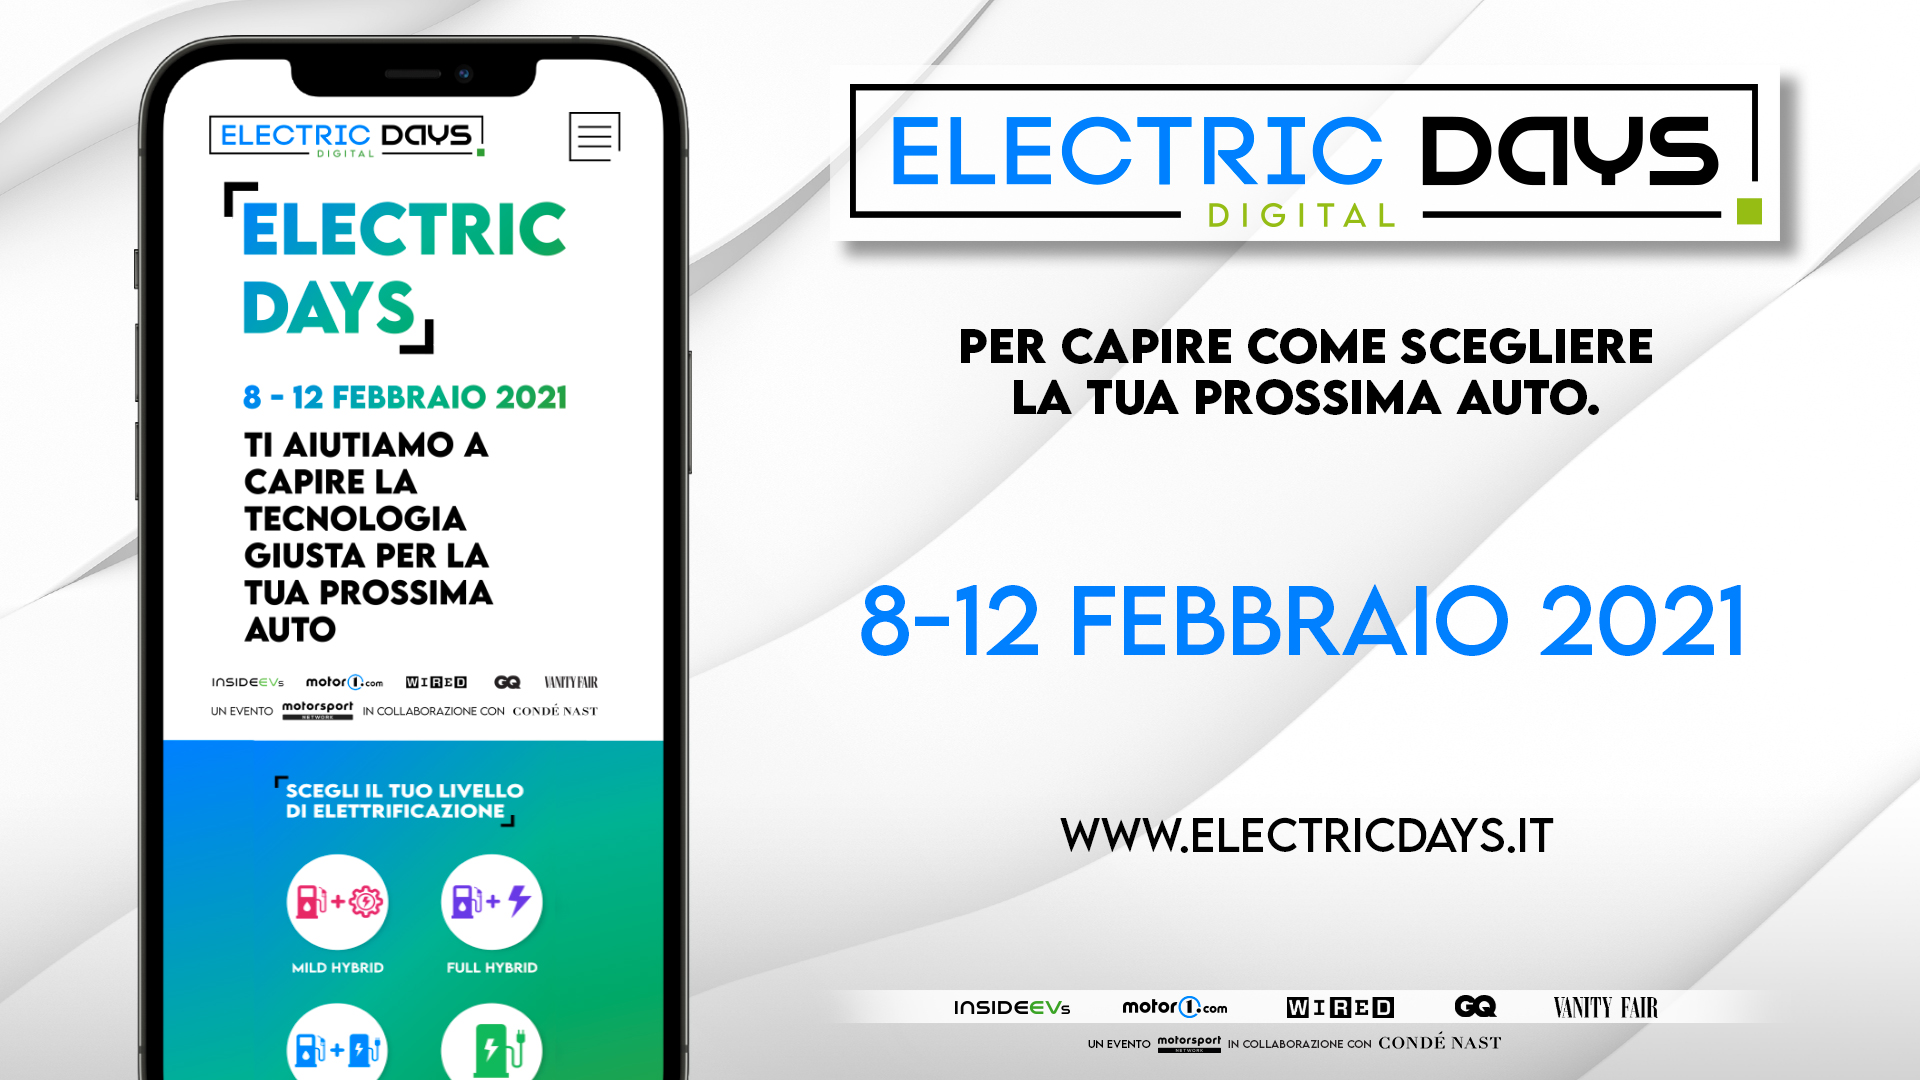 Electric Days Digital - 2